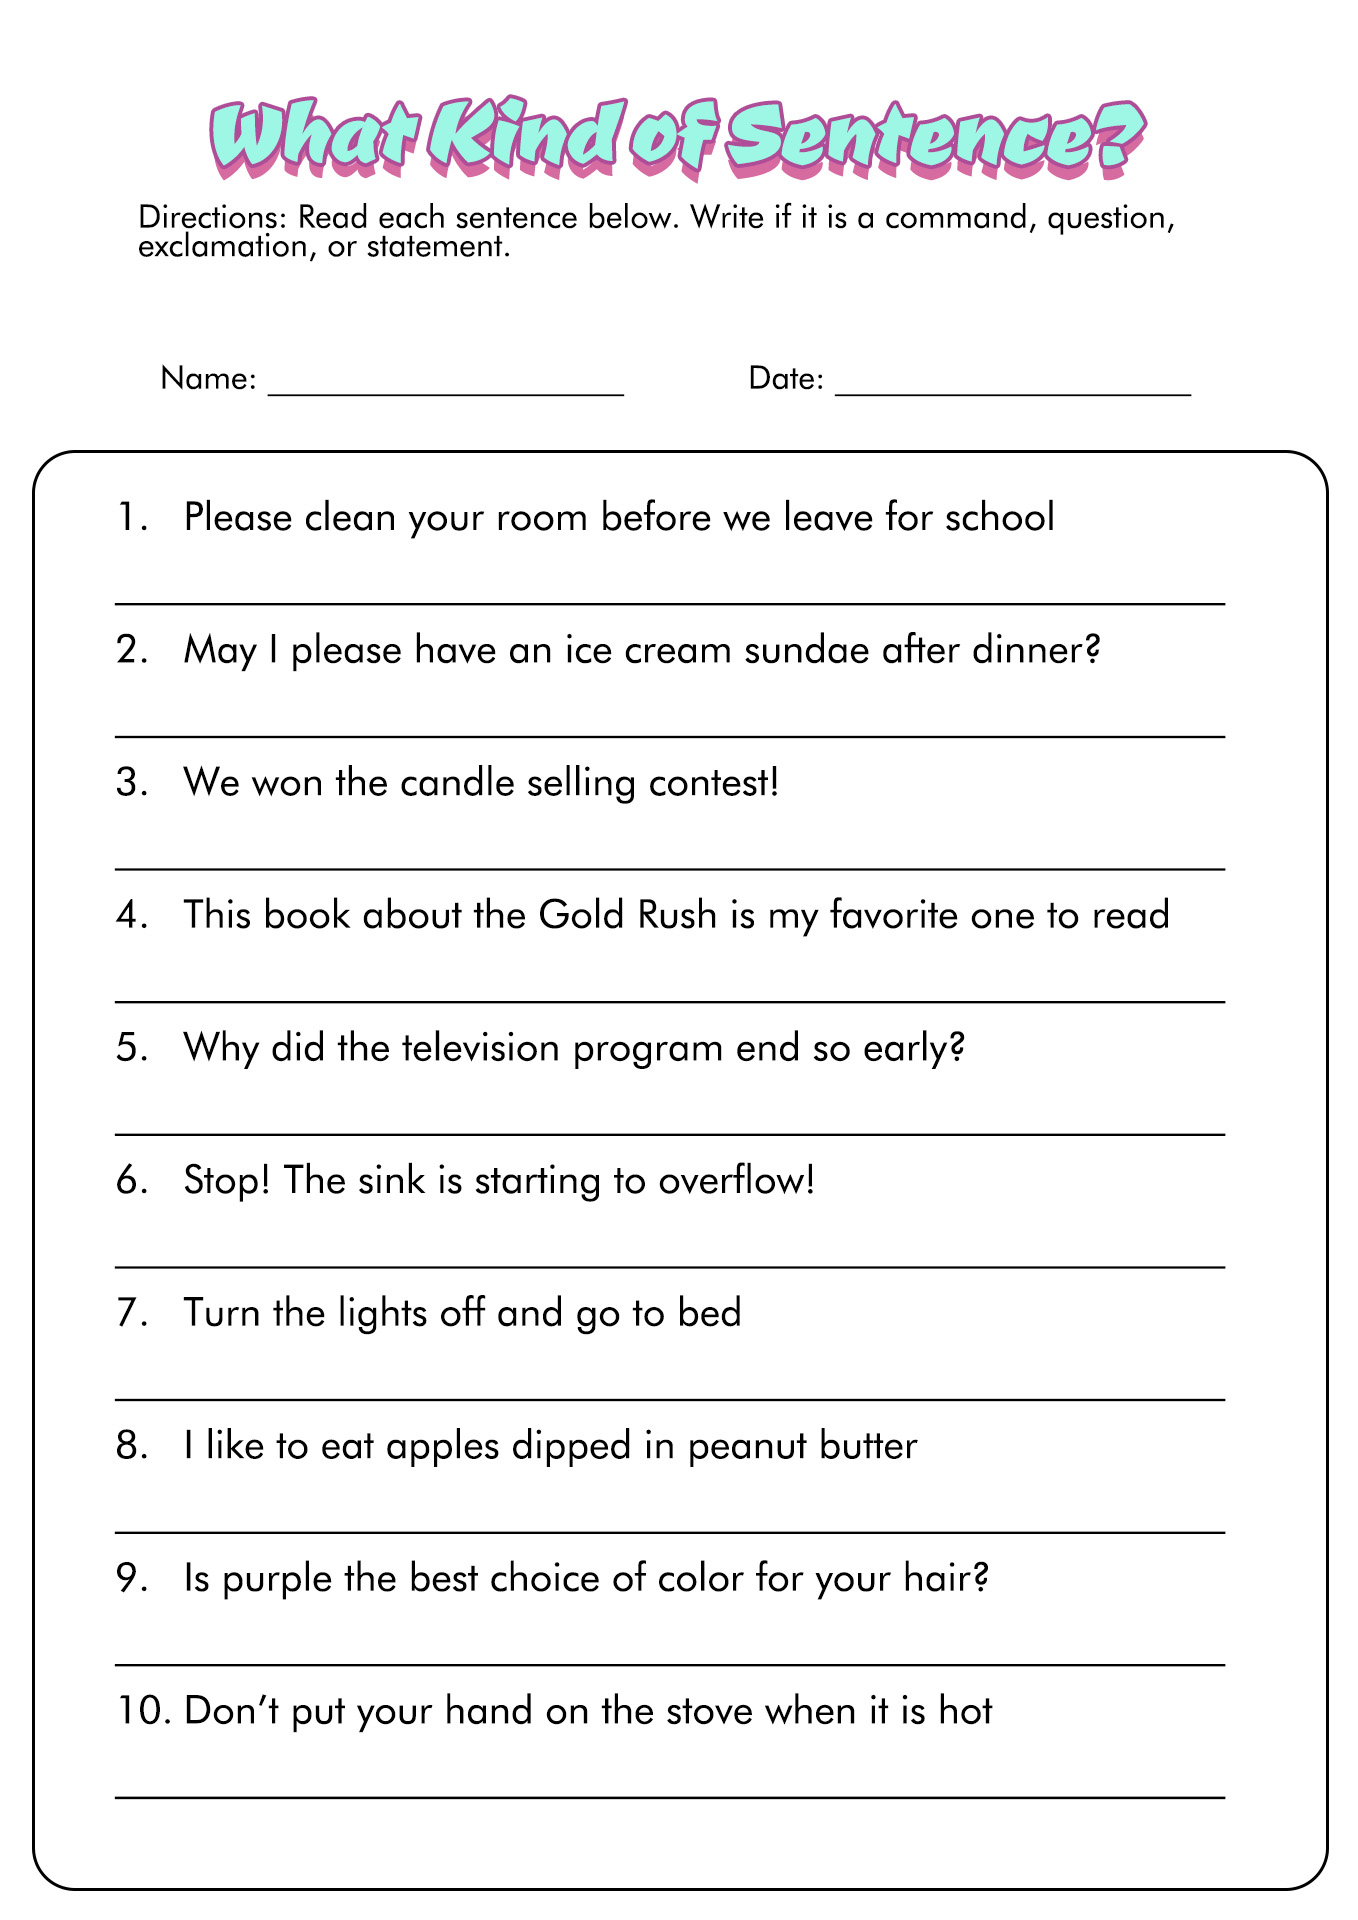 Identifying Types Of Sentences Worksheet